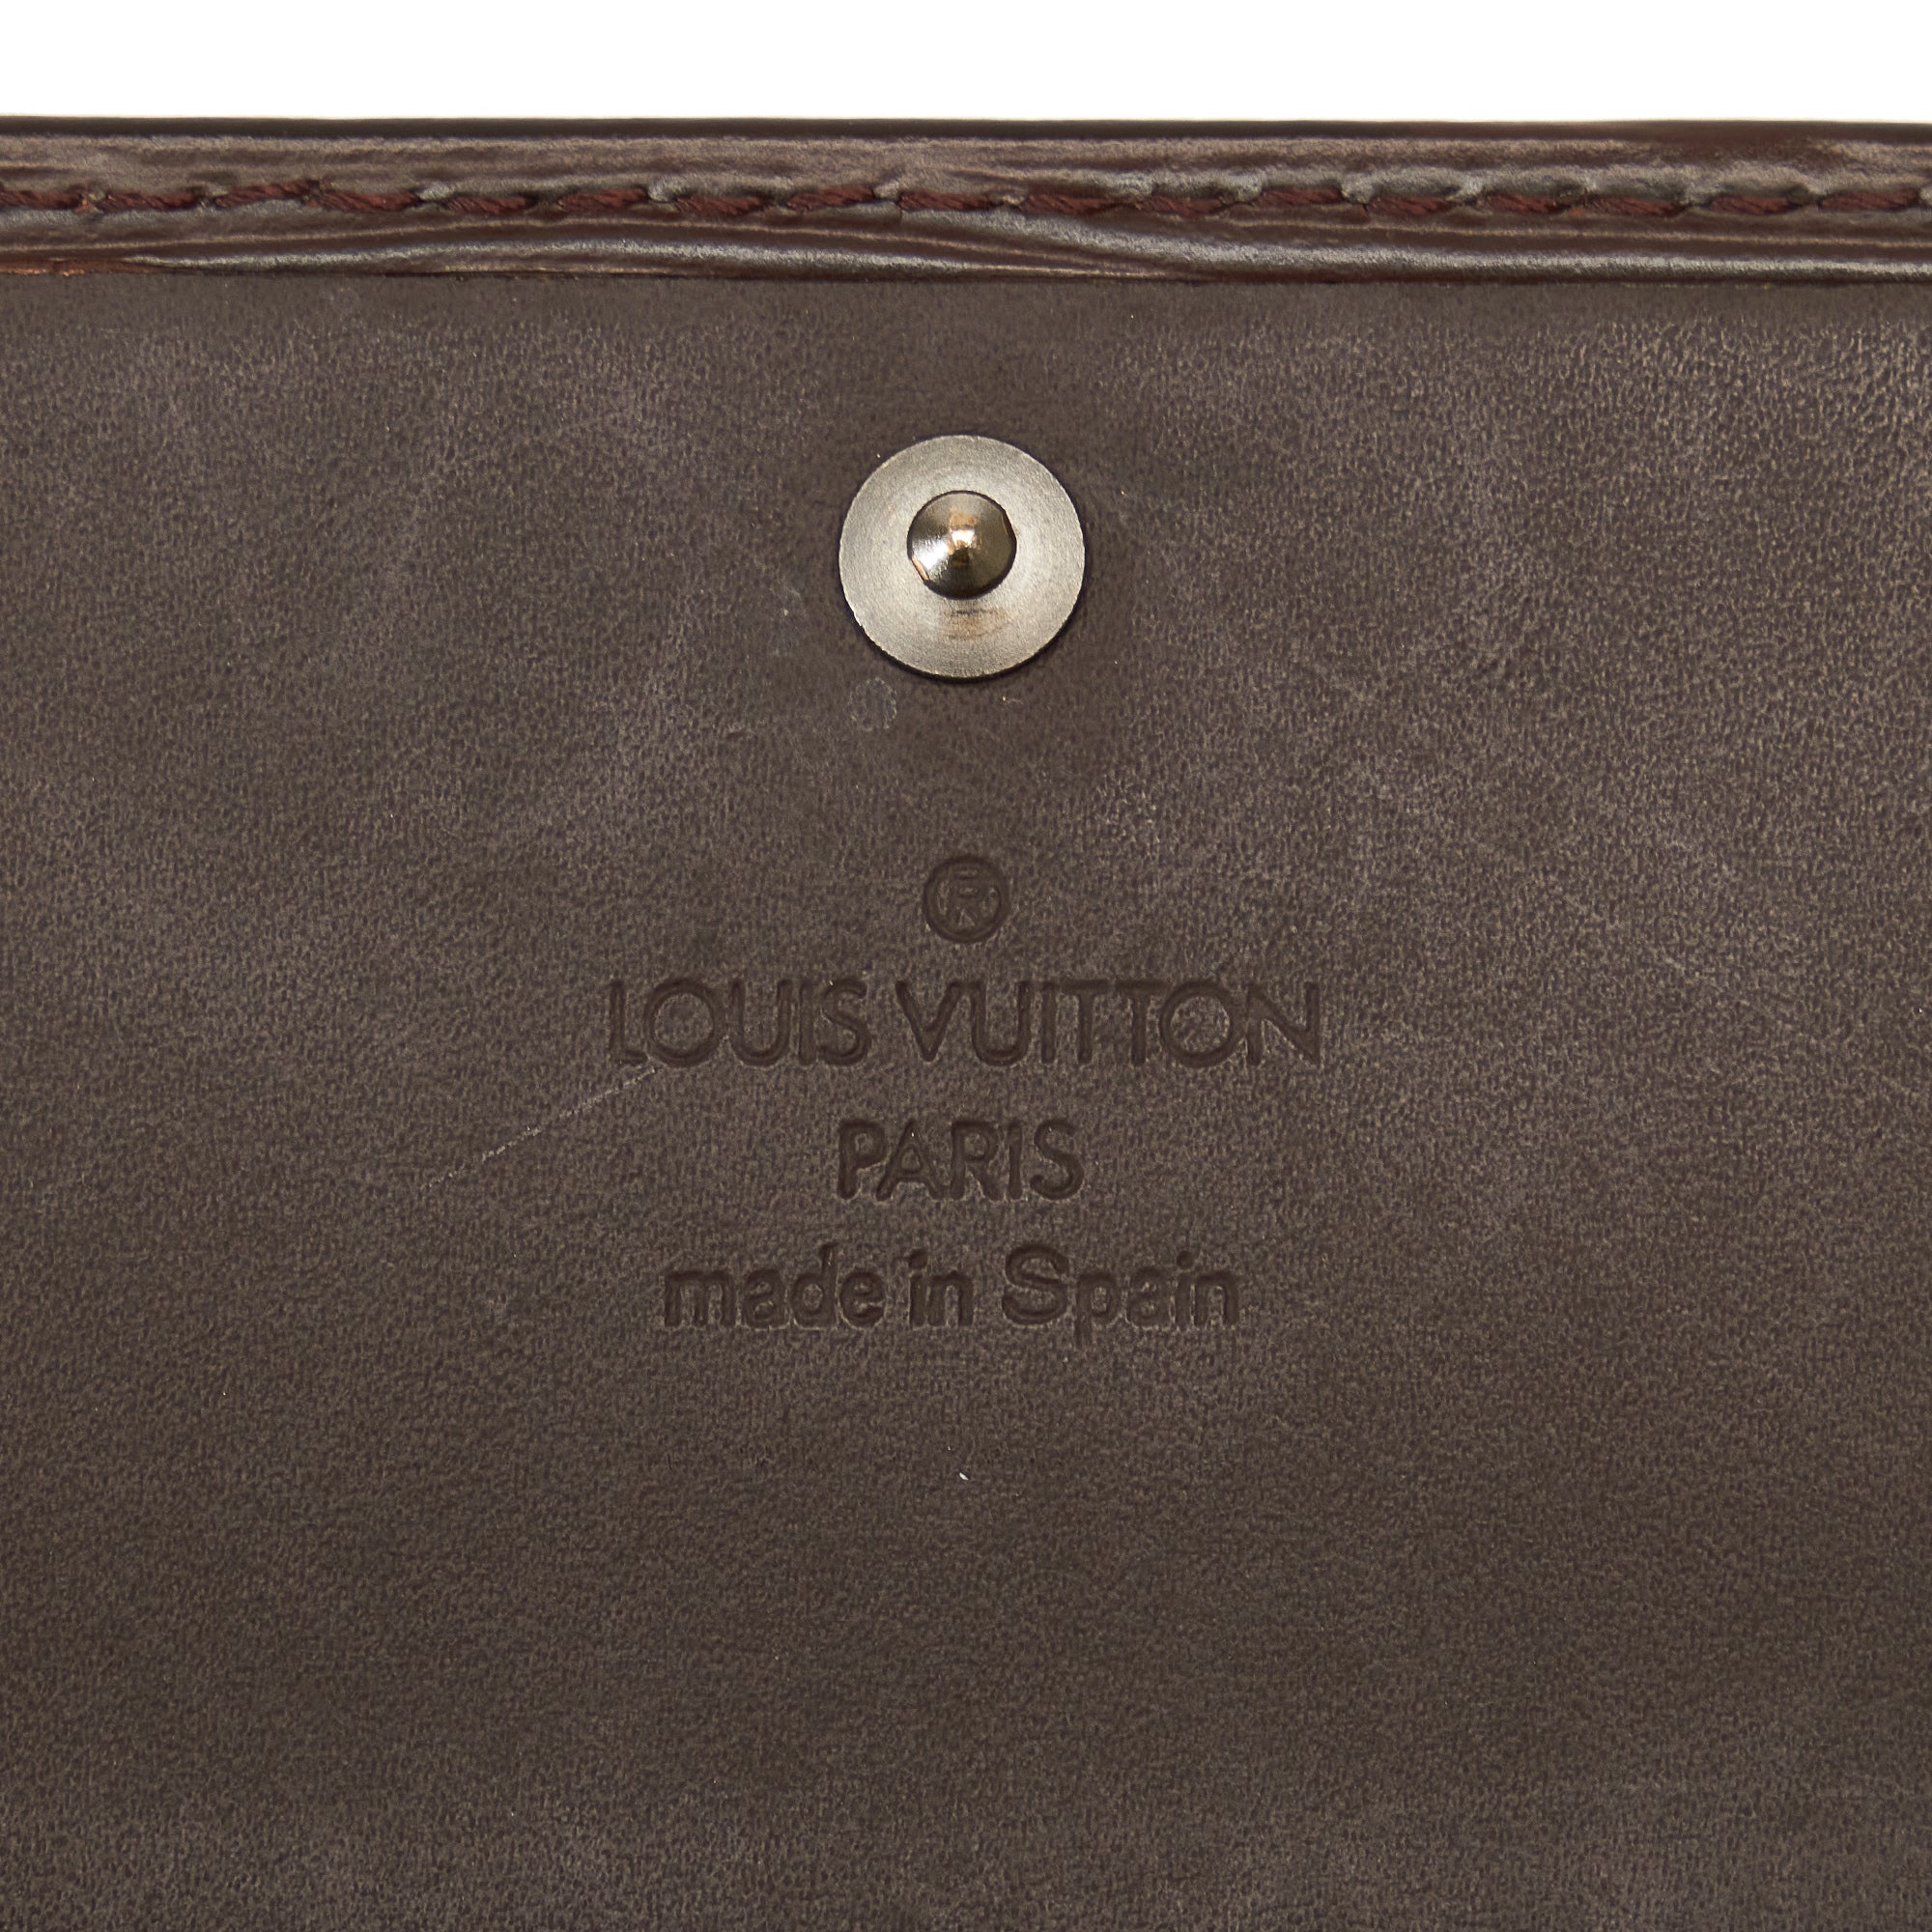 Louis Vuitton Pivoine EPI Leather Tribal Sarah Wallet Long Flap 5lvs421